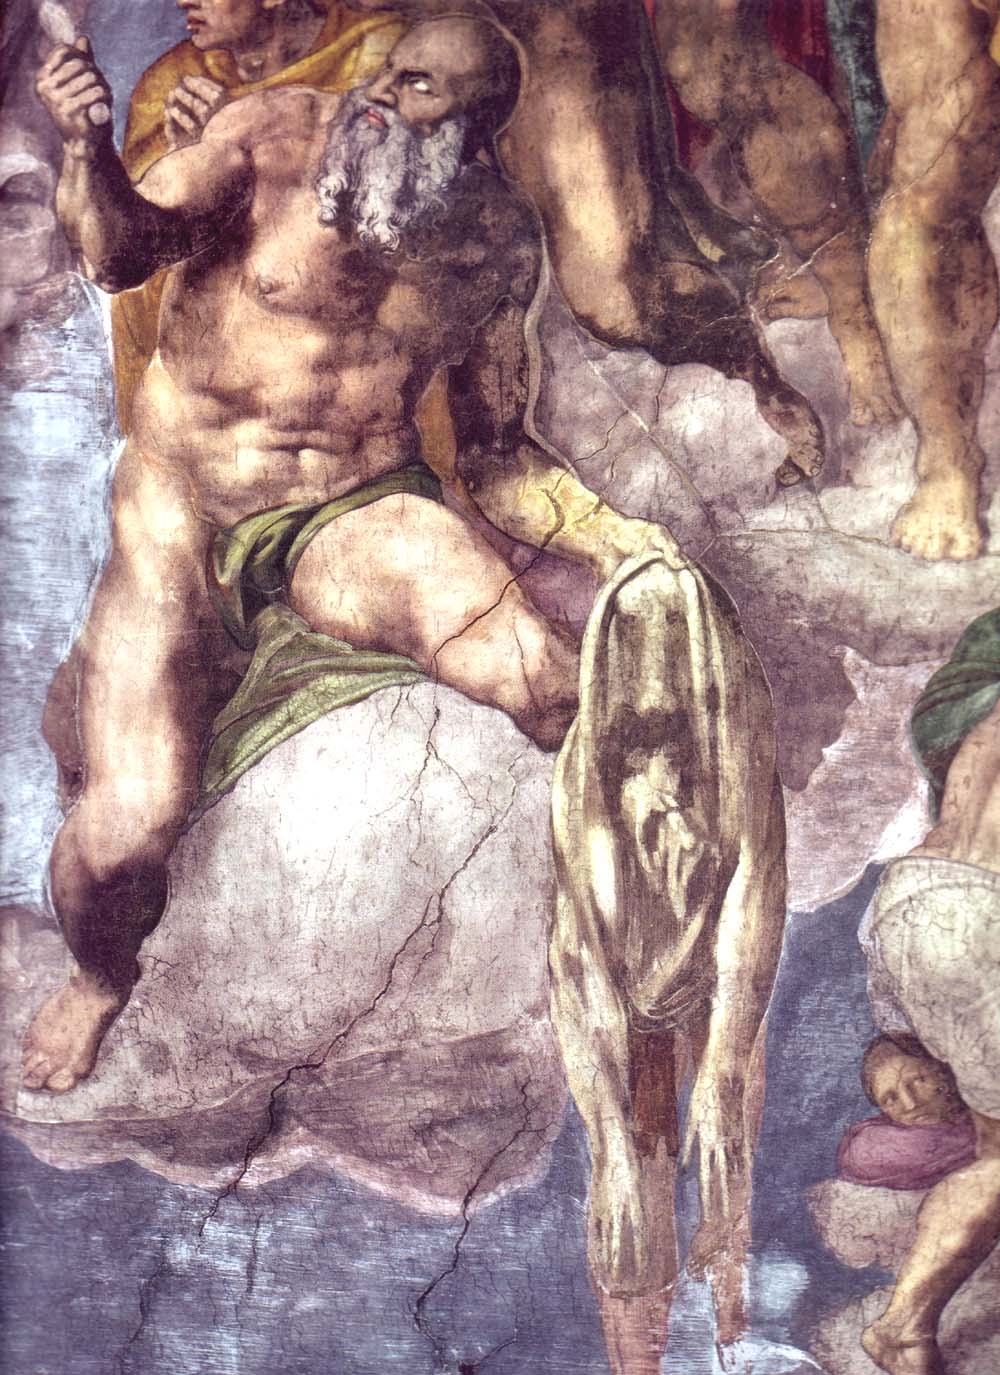 Michelangelo Buonarroti: The last judgement